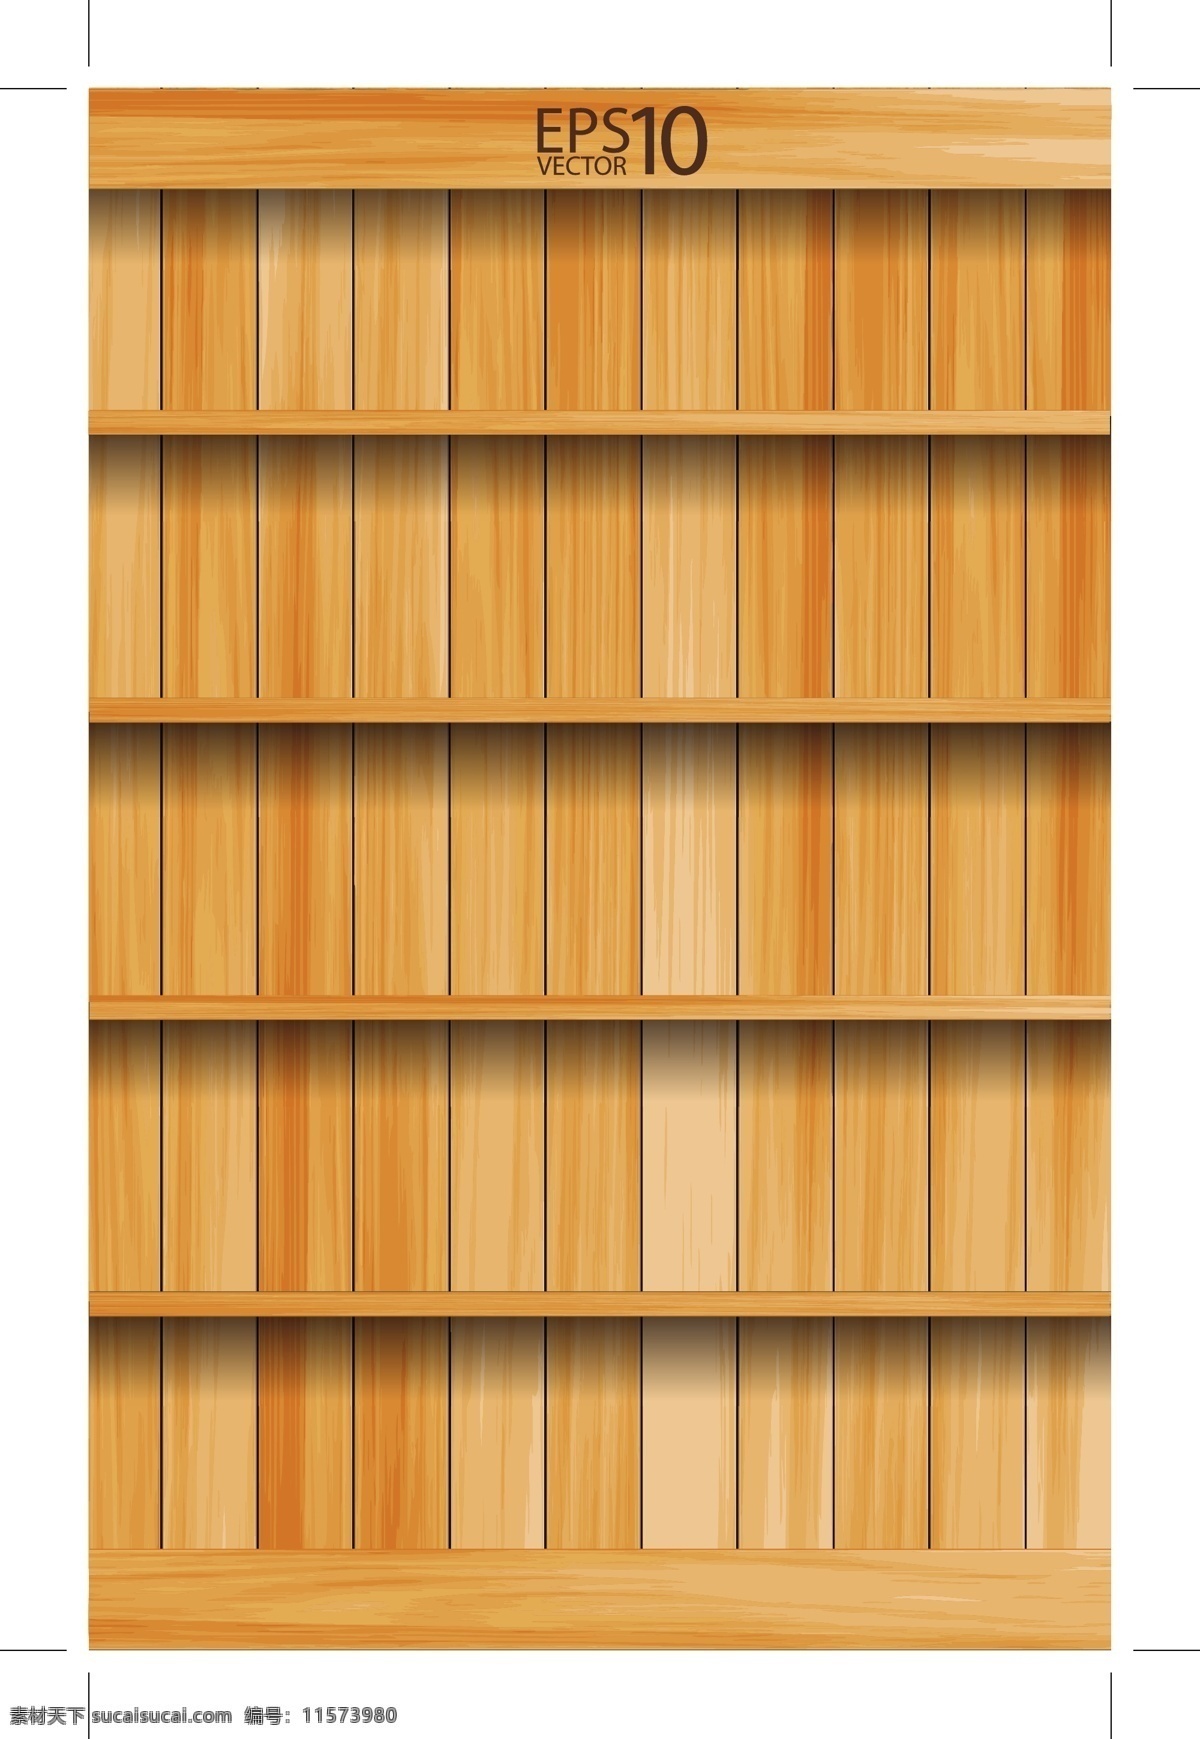 木板 矢量 背景 格式 柜子 木头 木纹 矢量素材 纹路 关键字 psd源文件